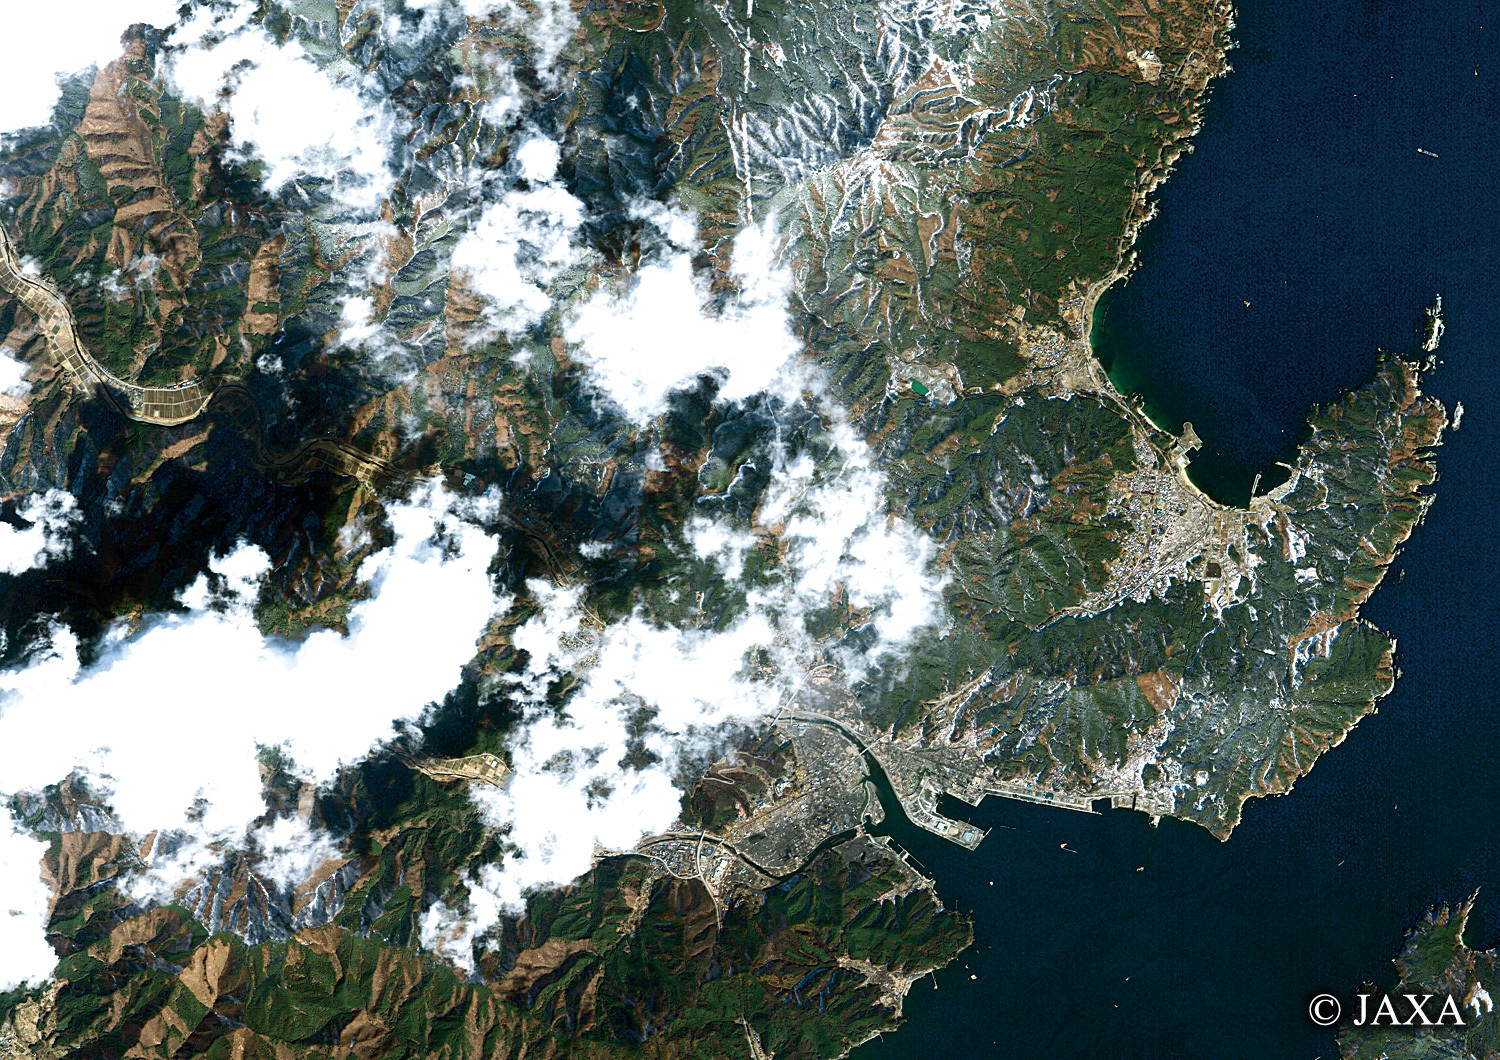 だいちから見た日本の都市 震災後の大槌町:衛星画像